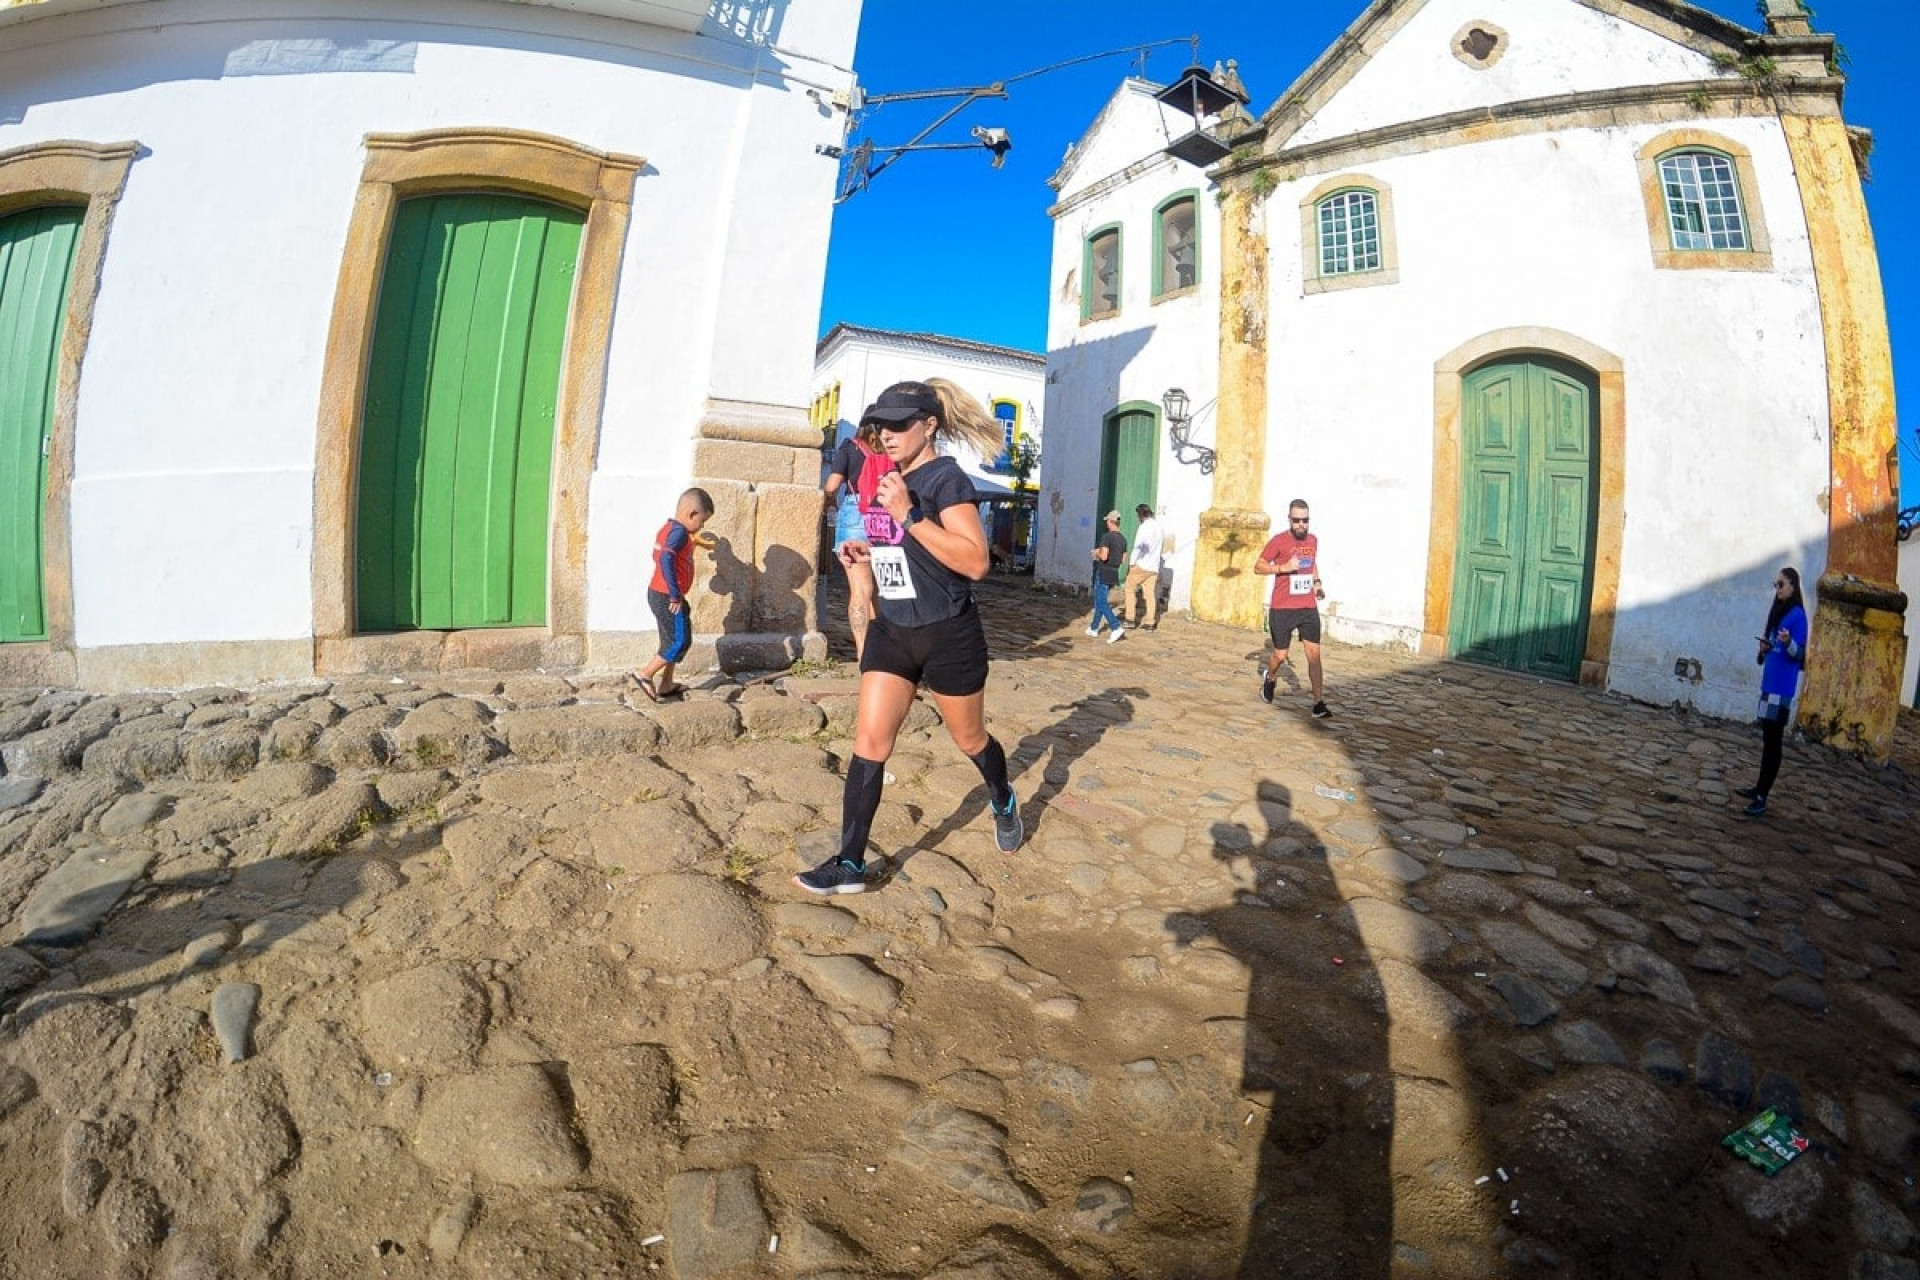 Atletas pelas ruas de pedras do centro histórico - Divulgação/Prefeitura de Paraty